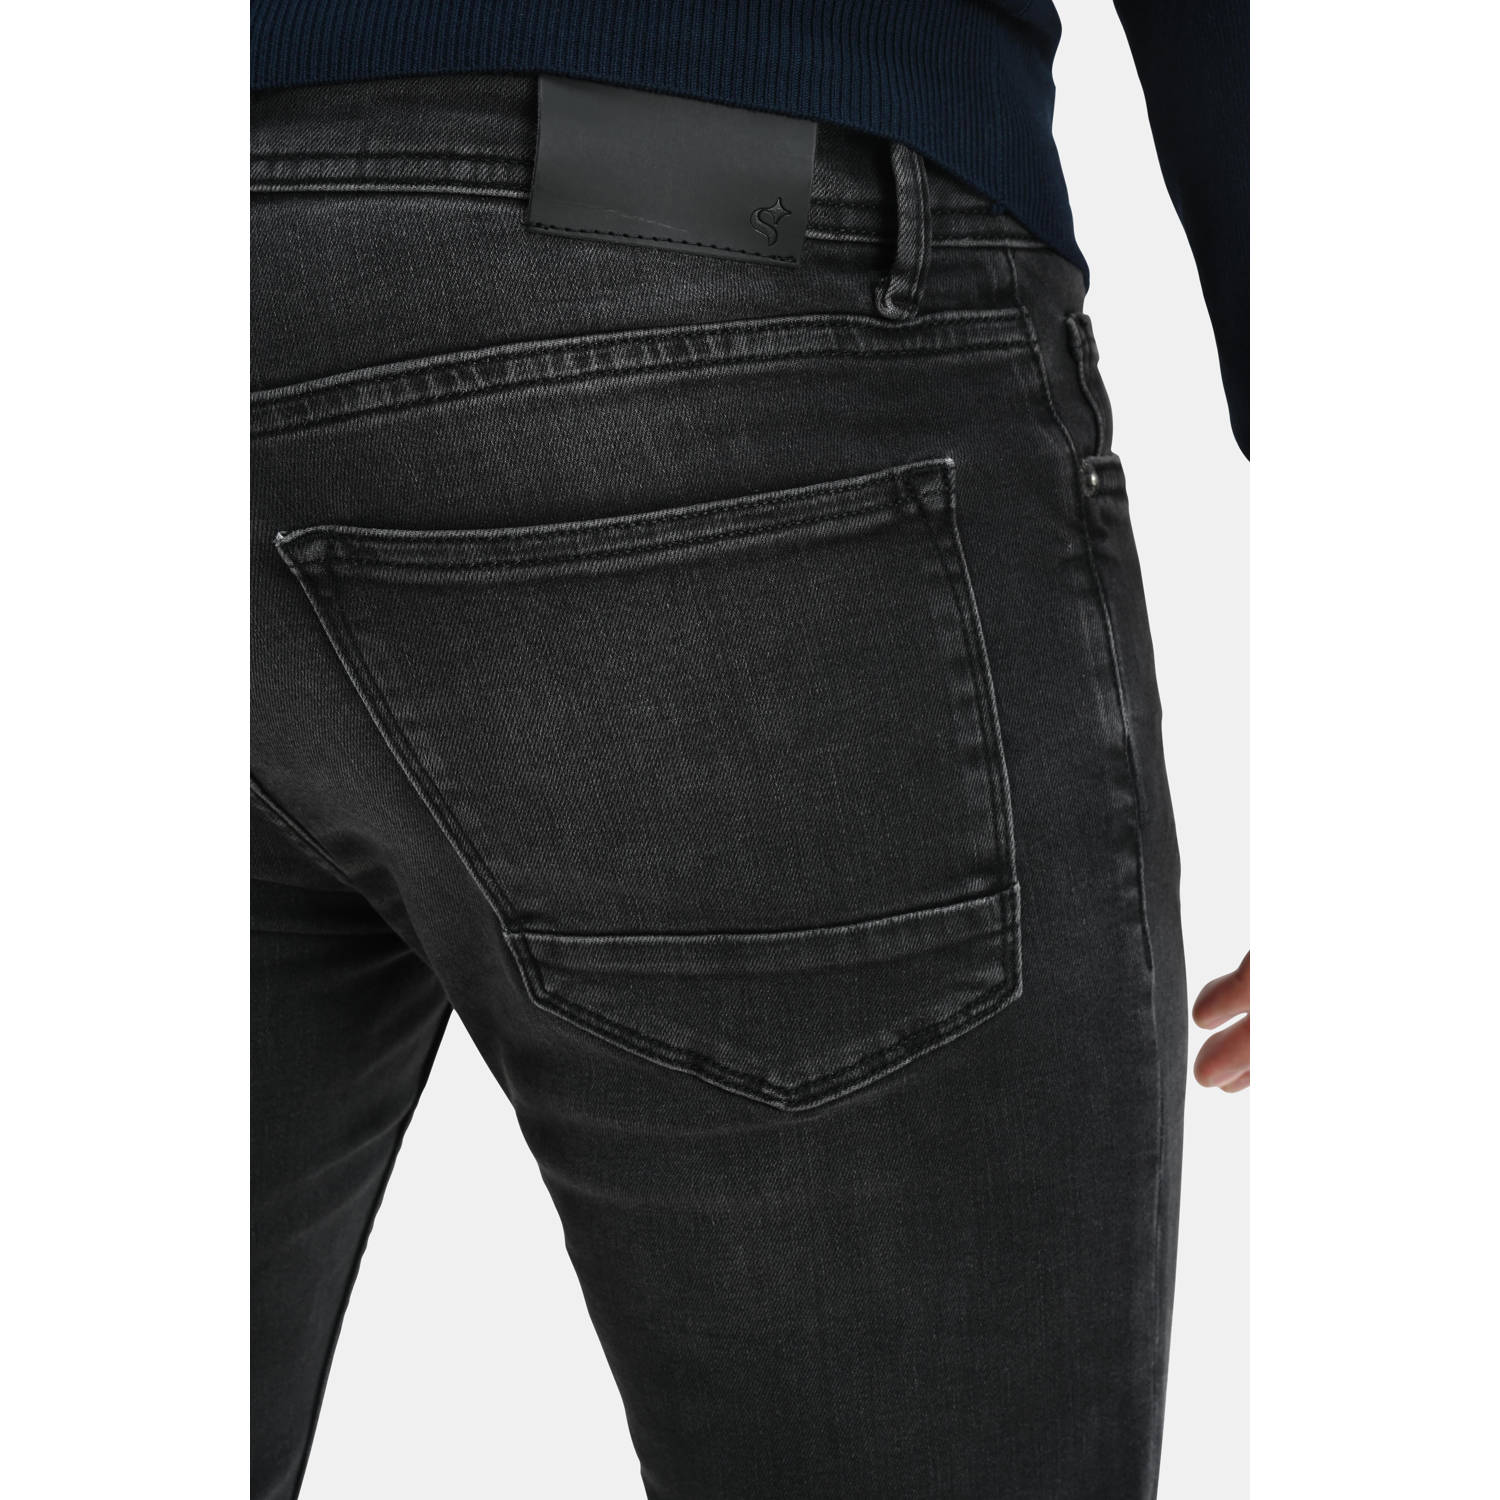 Shoeby slim fit L32 jeans Lucas Jack black denim